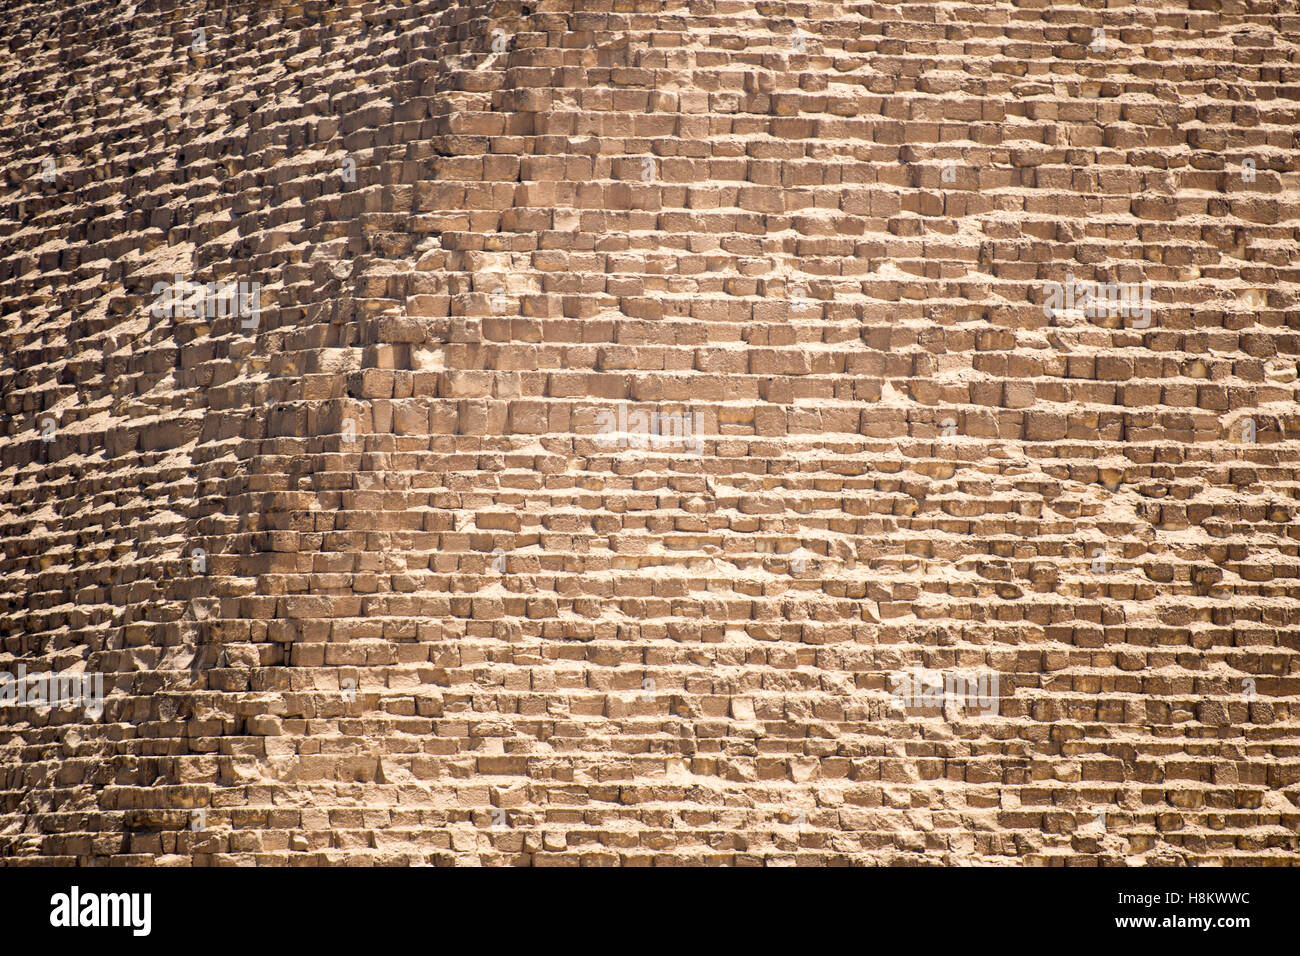 El Cairo, Egipto. Vista de cerca de la cubierta de piedras (caliza) que conforman las grandes Pirámides de Giza. Foto de stock